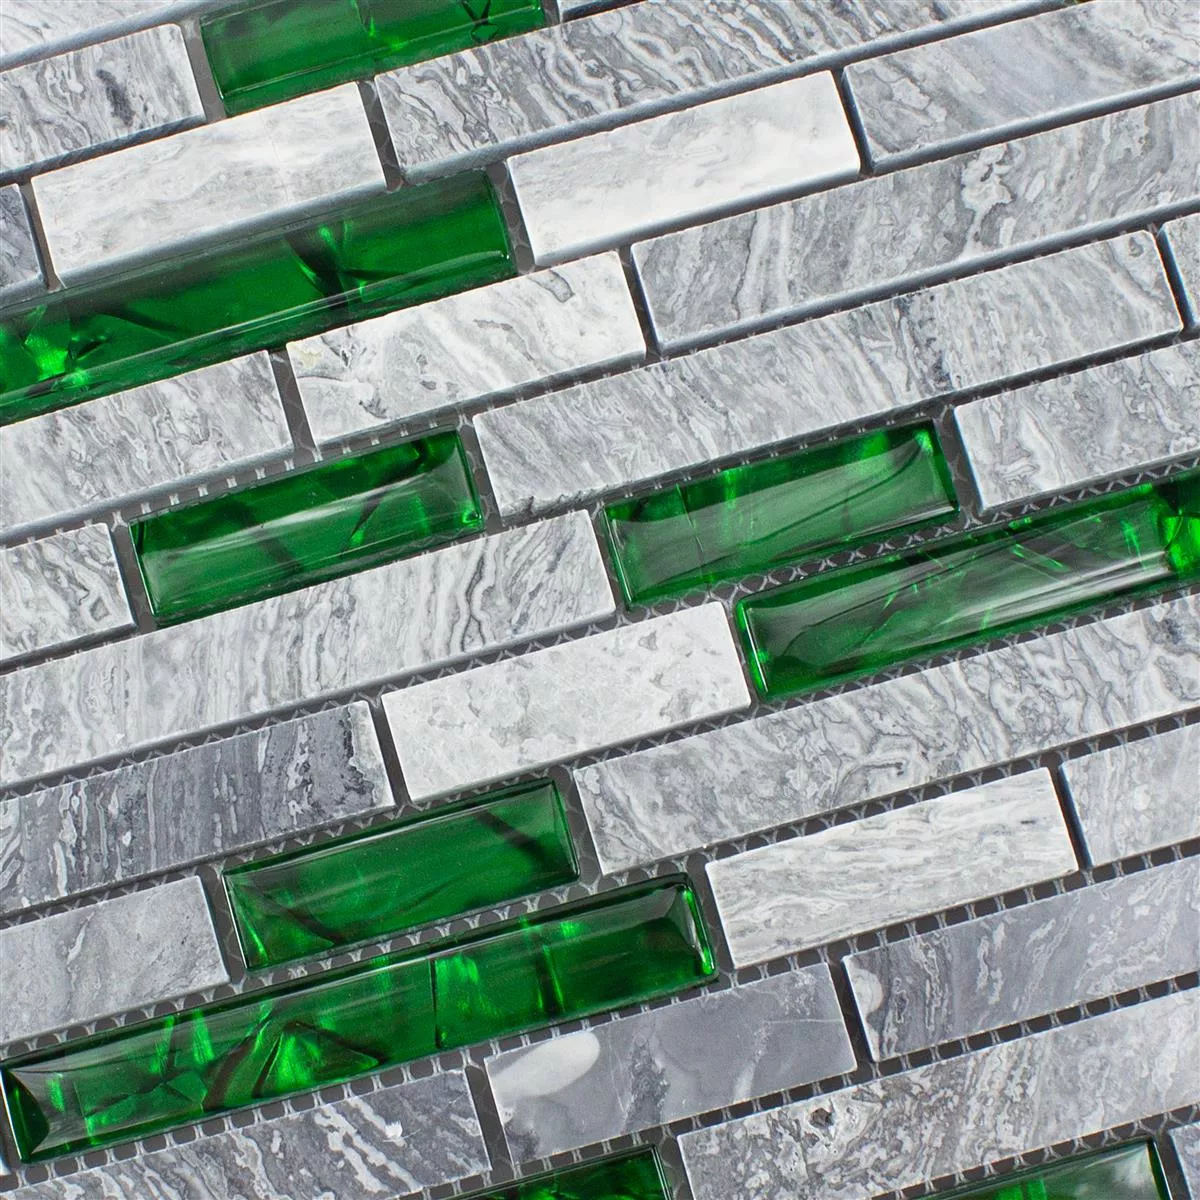 Muster von Glas Naturstein Mosaik Fliesen Sinop Grau Grün Brick